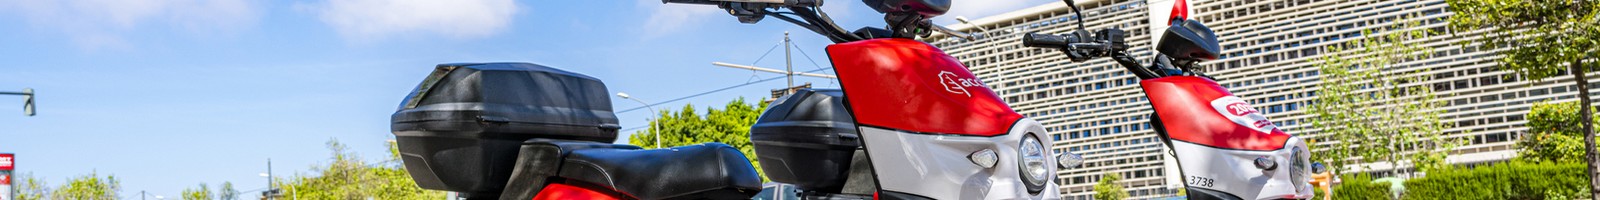 Les motos électriques de la marque LiveWire de nouveau sur le marché